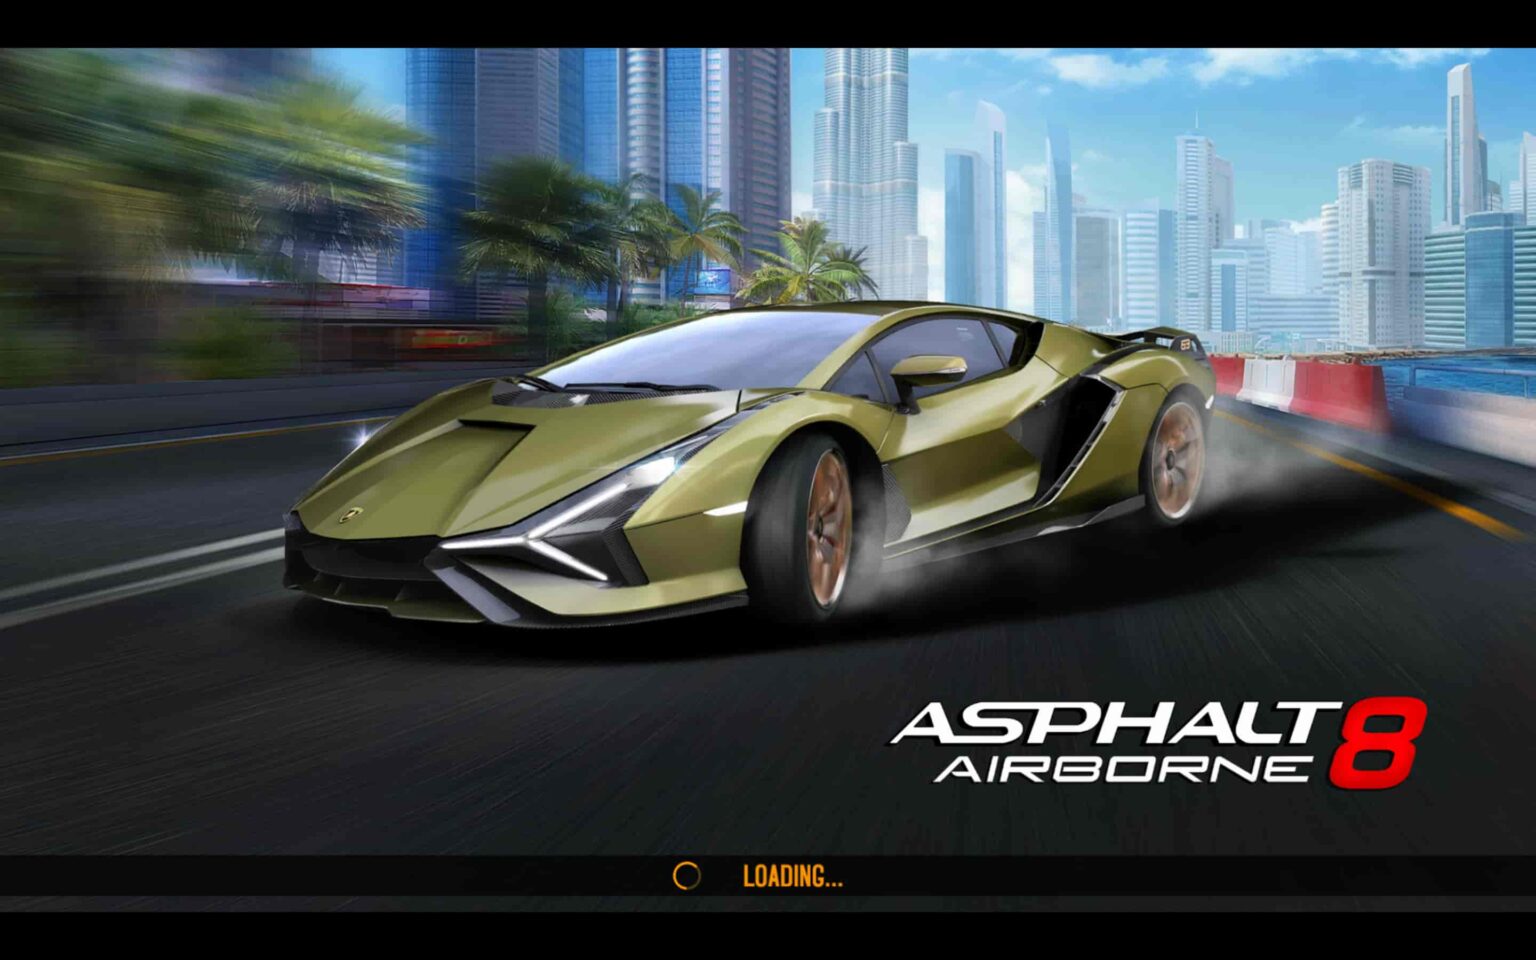 asphalt 7 pc download free